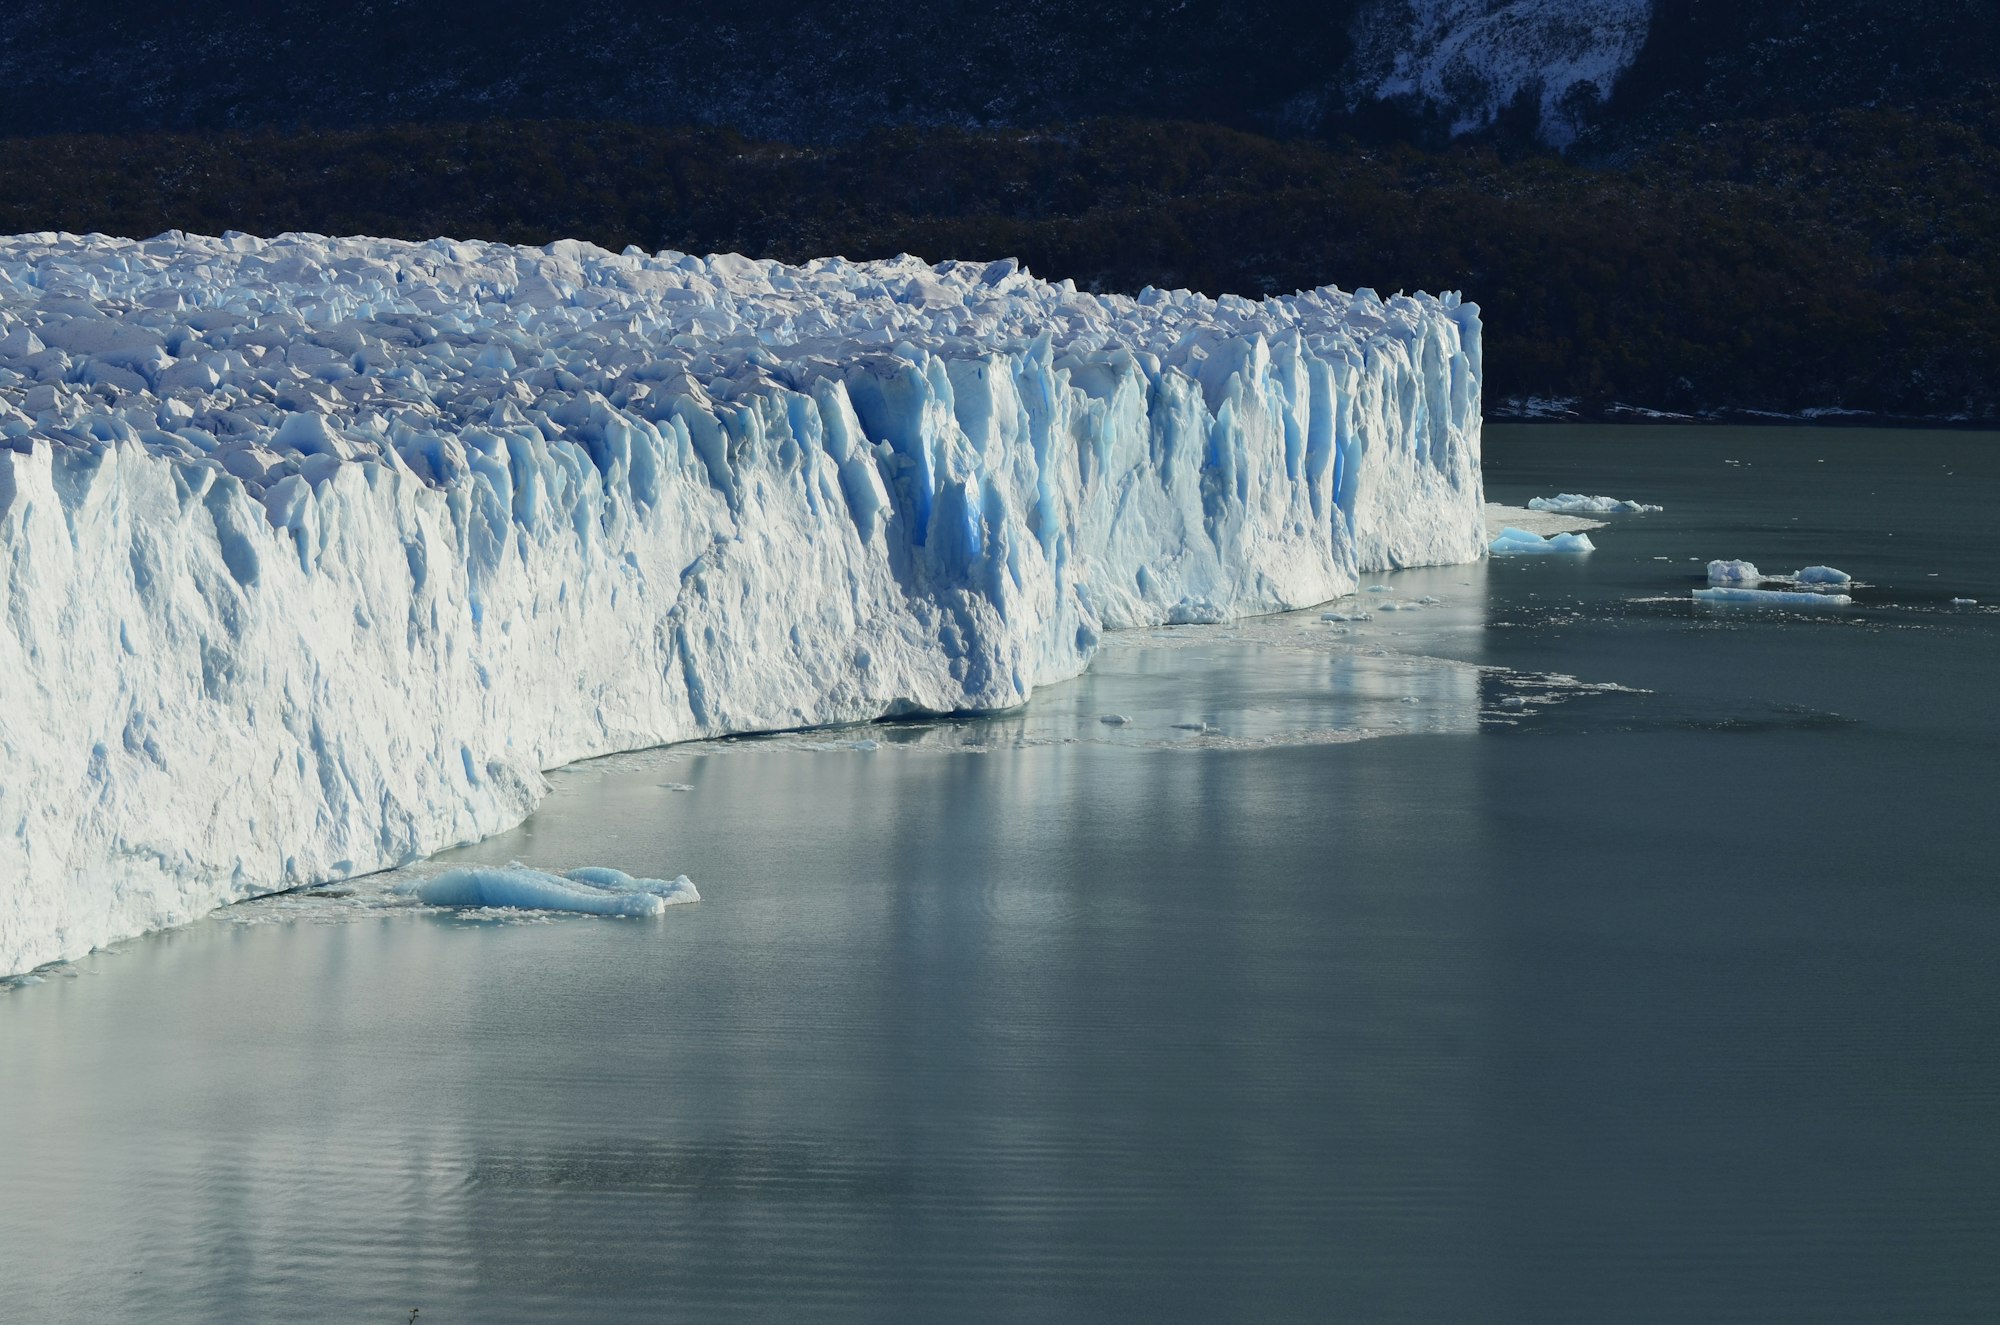 Glaciar Perito Moreno
//
Perito Moreno Glacier